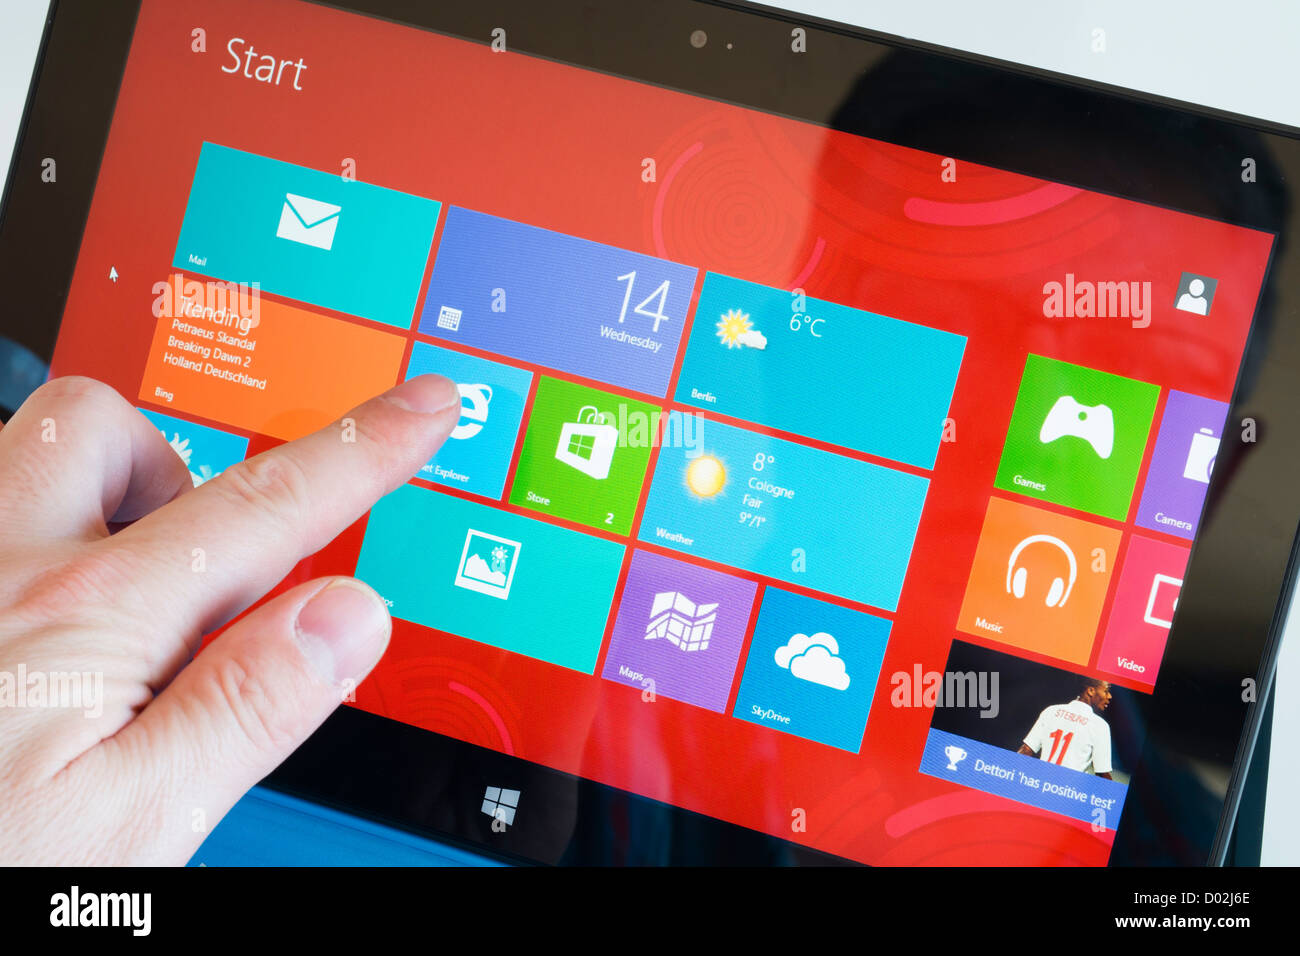 Detai von Windows 8 Startbildschirm auf dem Microsoft Surface rt Tablet PC Stockfoto